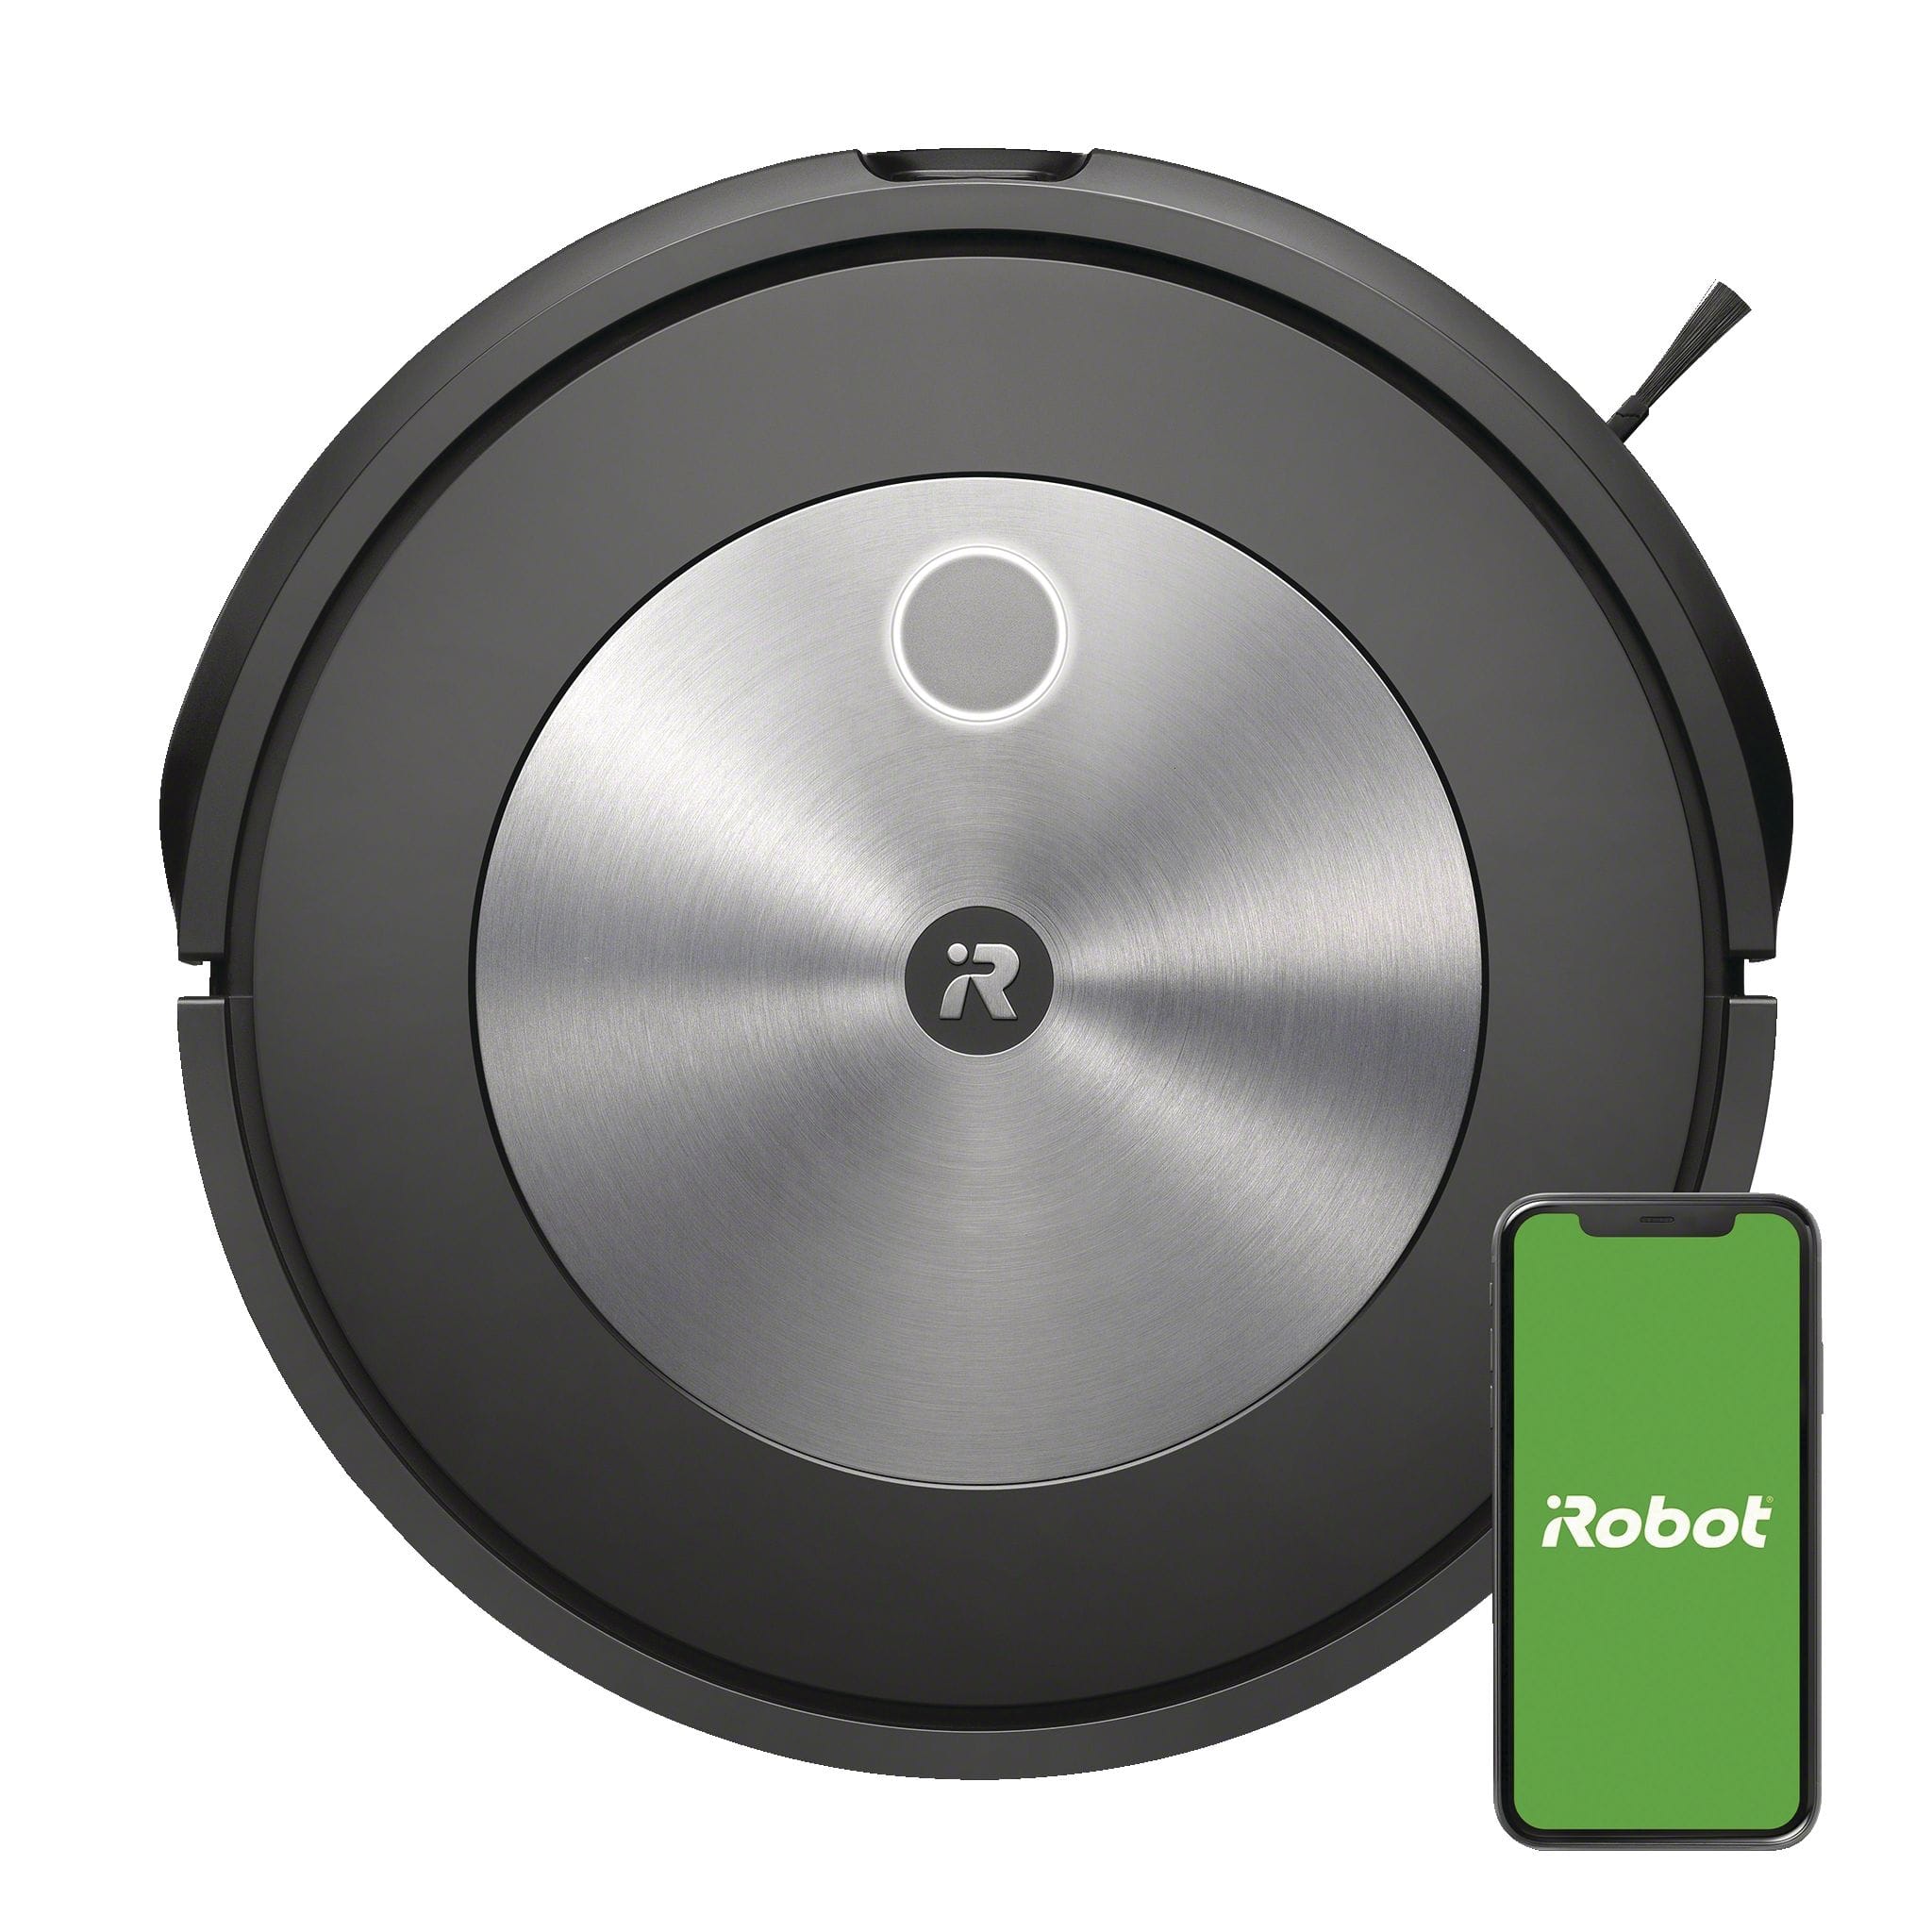 Accessoires compatibles avec iRobot Roomba série 600 - (13 pièces